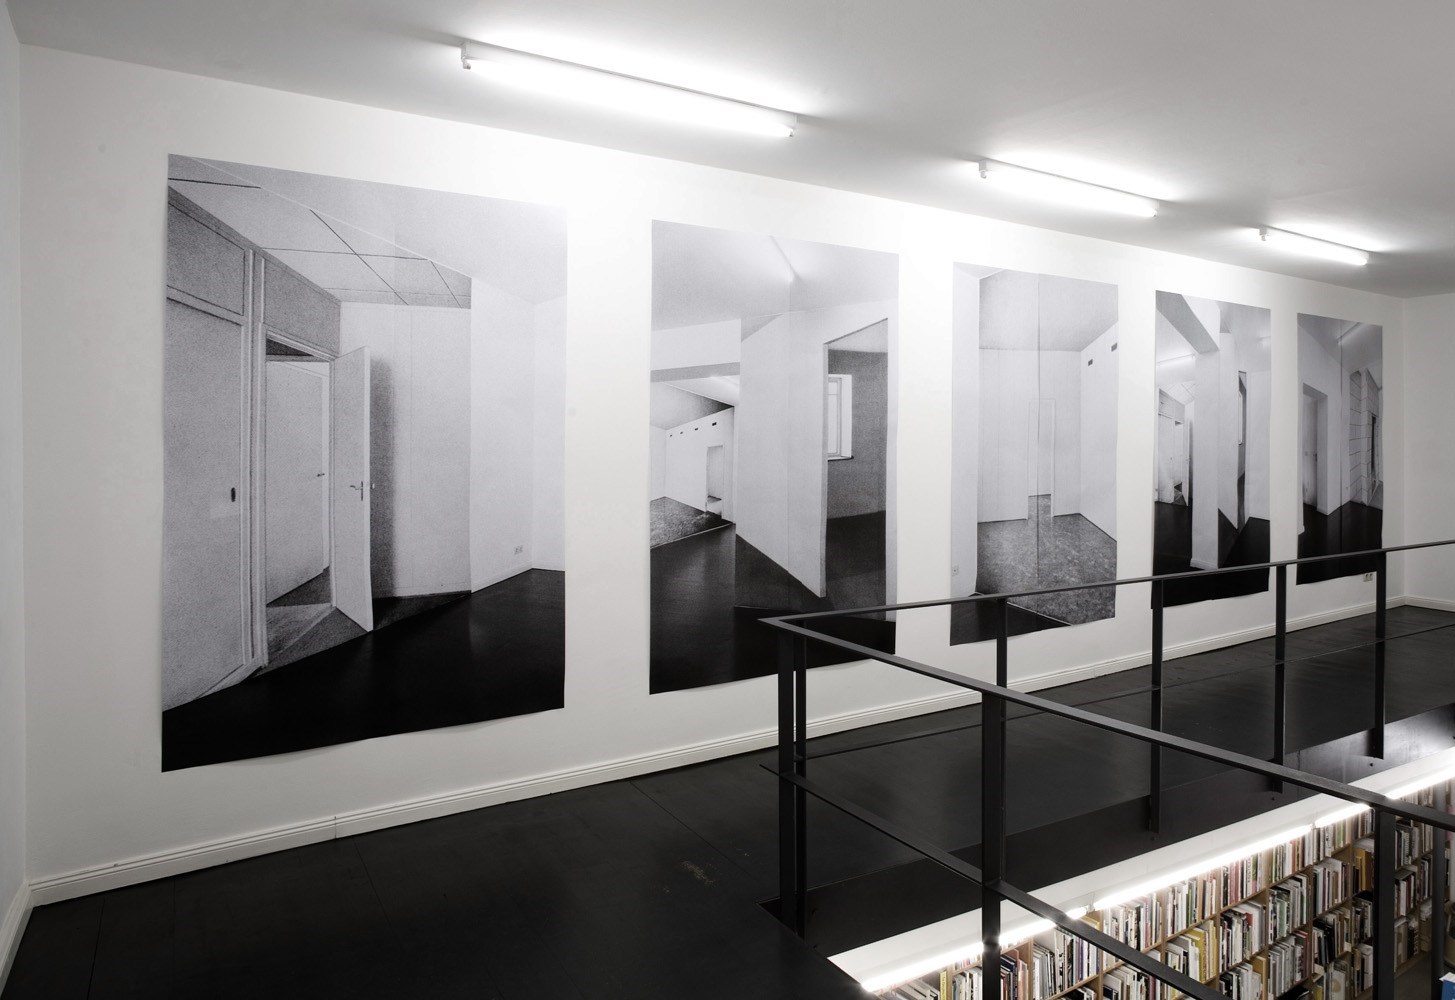 Rohbaucollage, 5 x 210cm x 140cm, black & white prints, 2009<br />Installation view Galerie Barbara Wien, Berlin